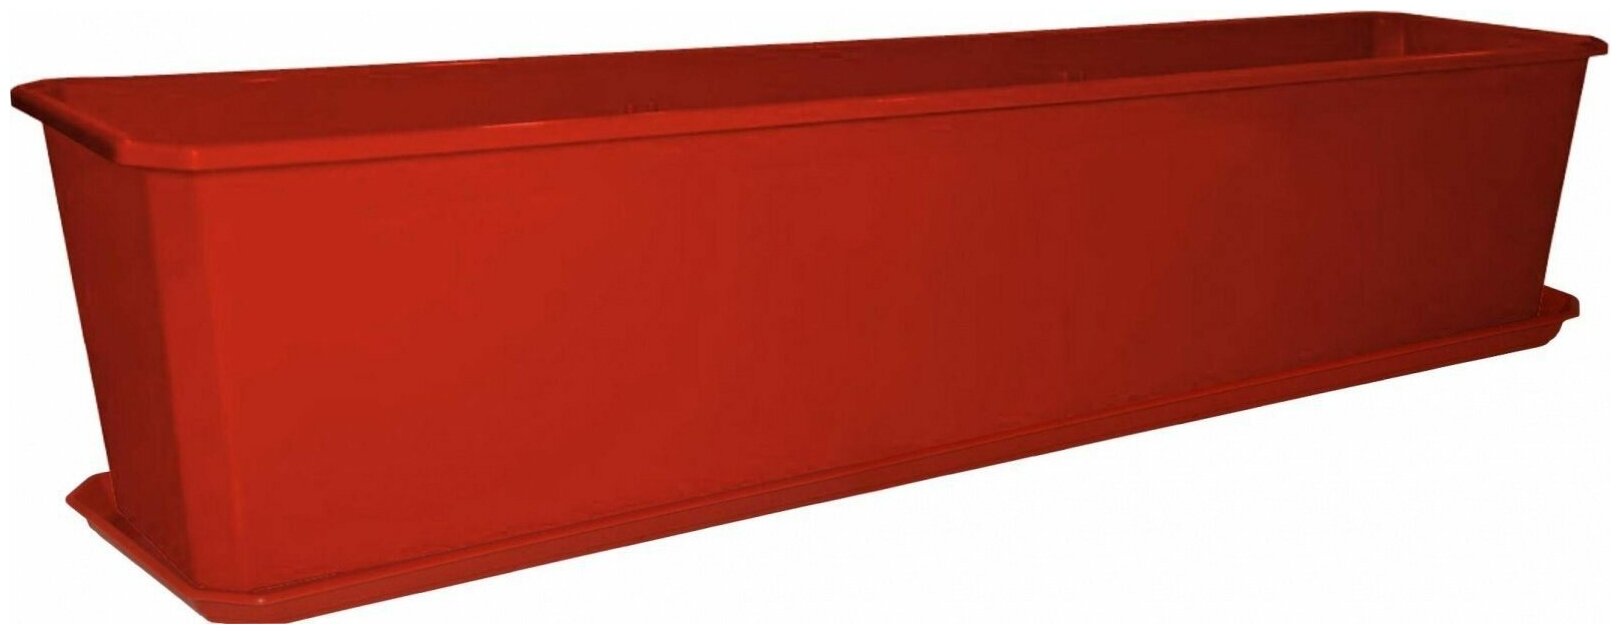 Набор балконный INGREEN ящик и поддон (терракотовый, 14 л), 80 см